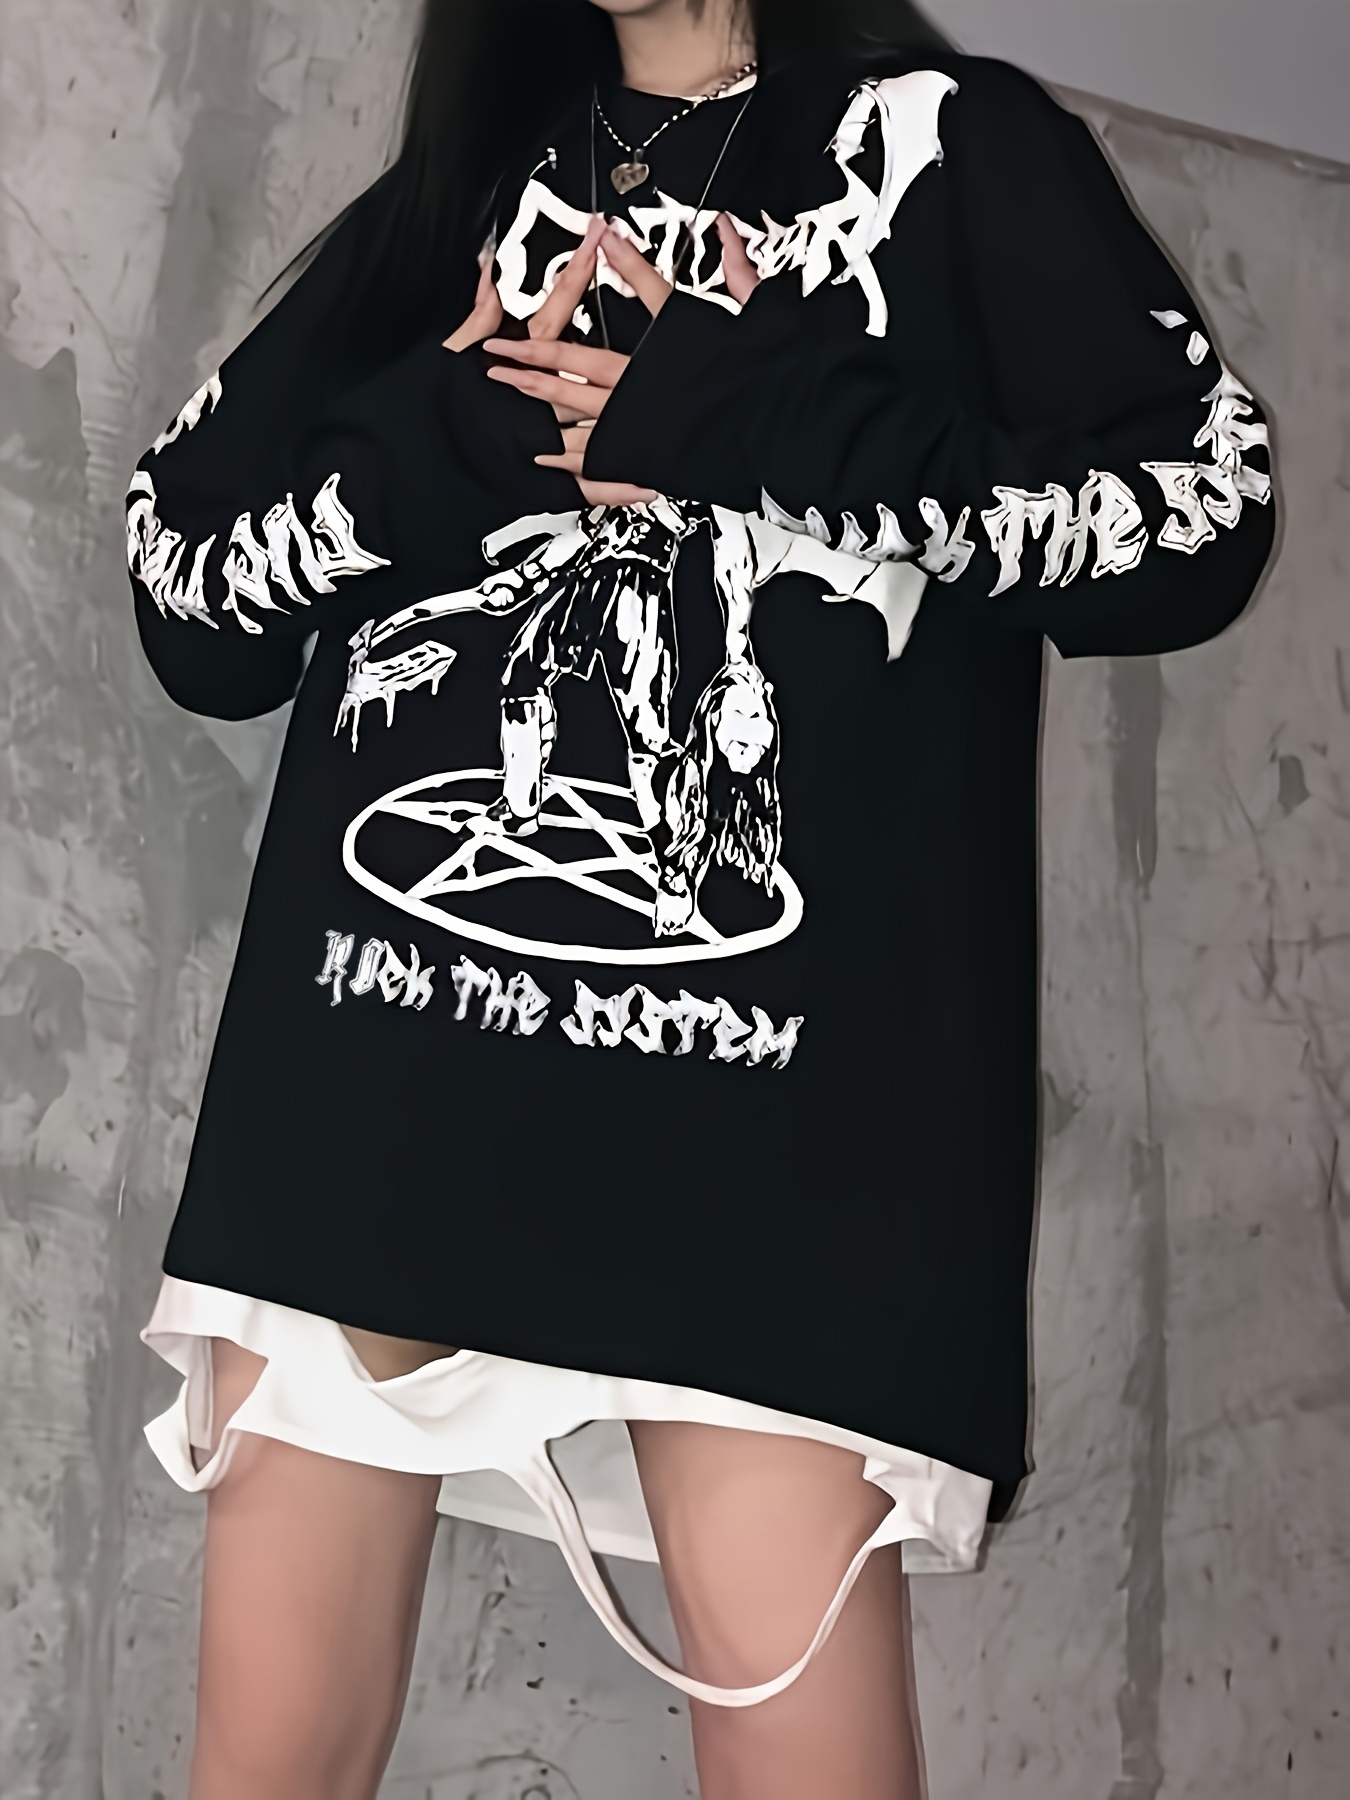 Punk Gothic Goth Ropa para las mujeres más tamaño Tops con capucha negro  bolsillo camisa chaqueta Zip Up Hoodie